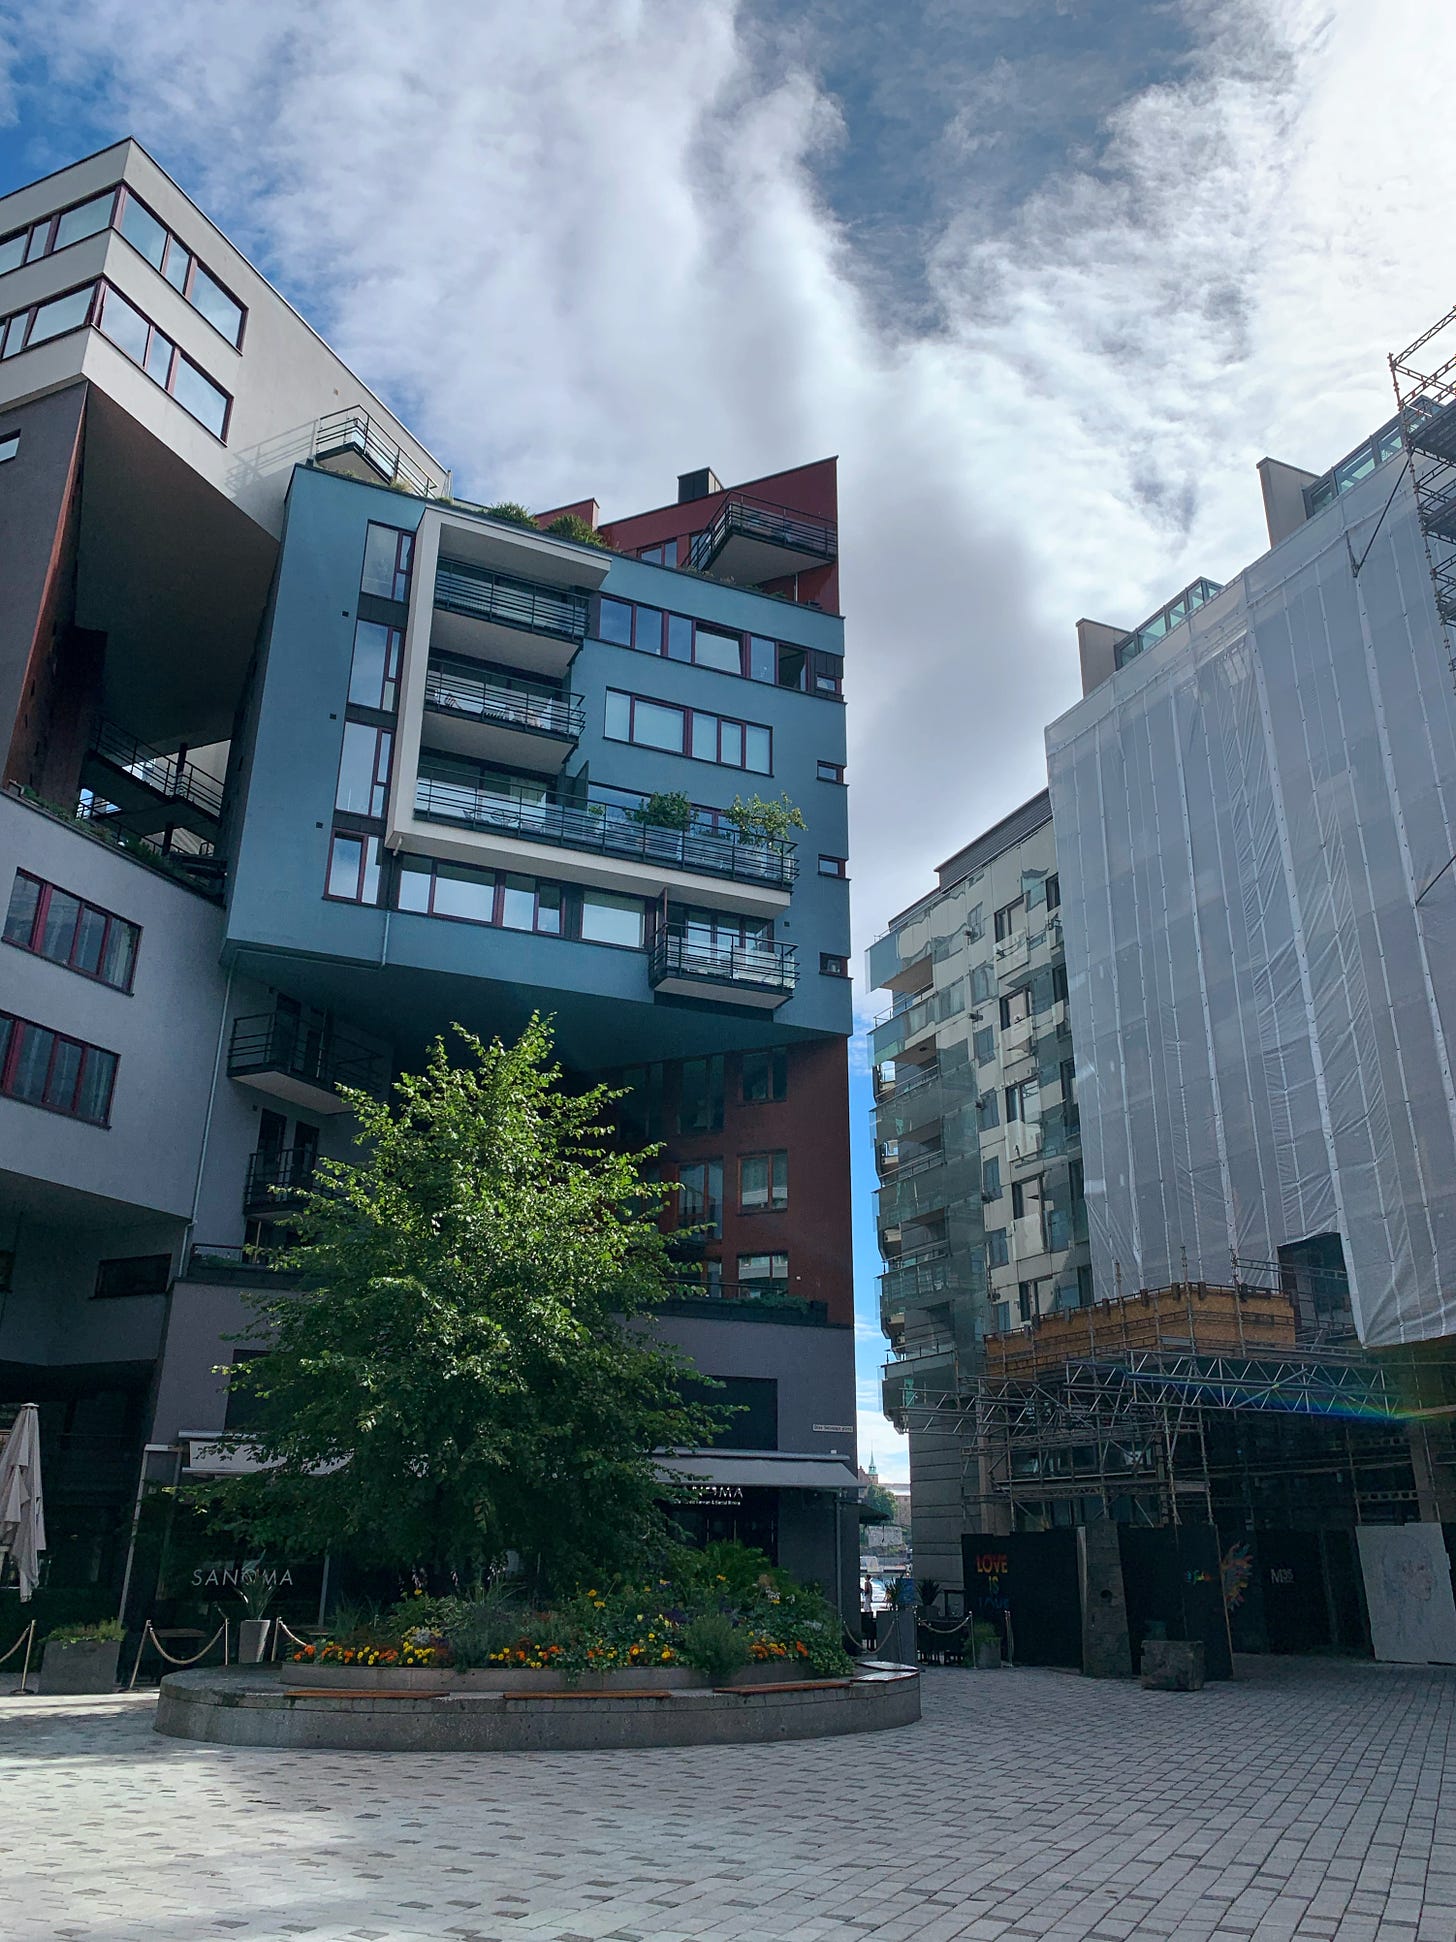 Apartment buildings with unique shapes